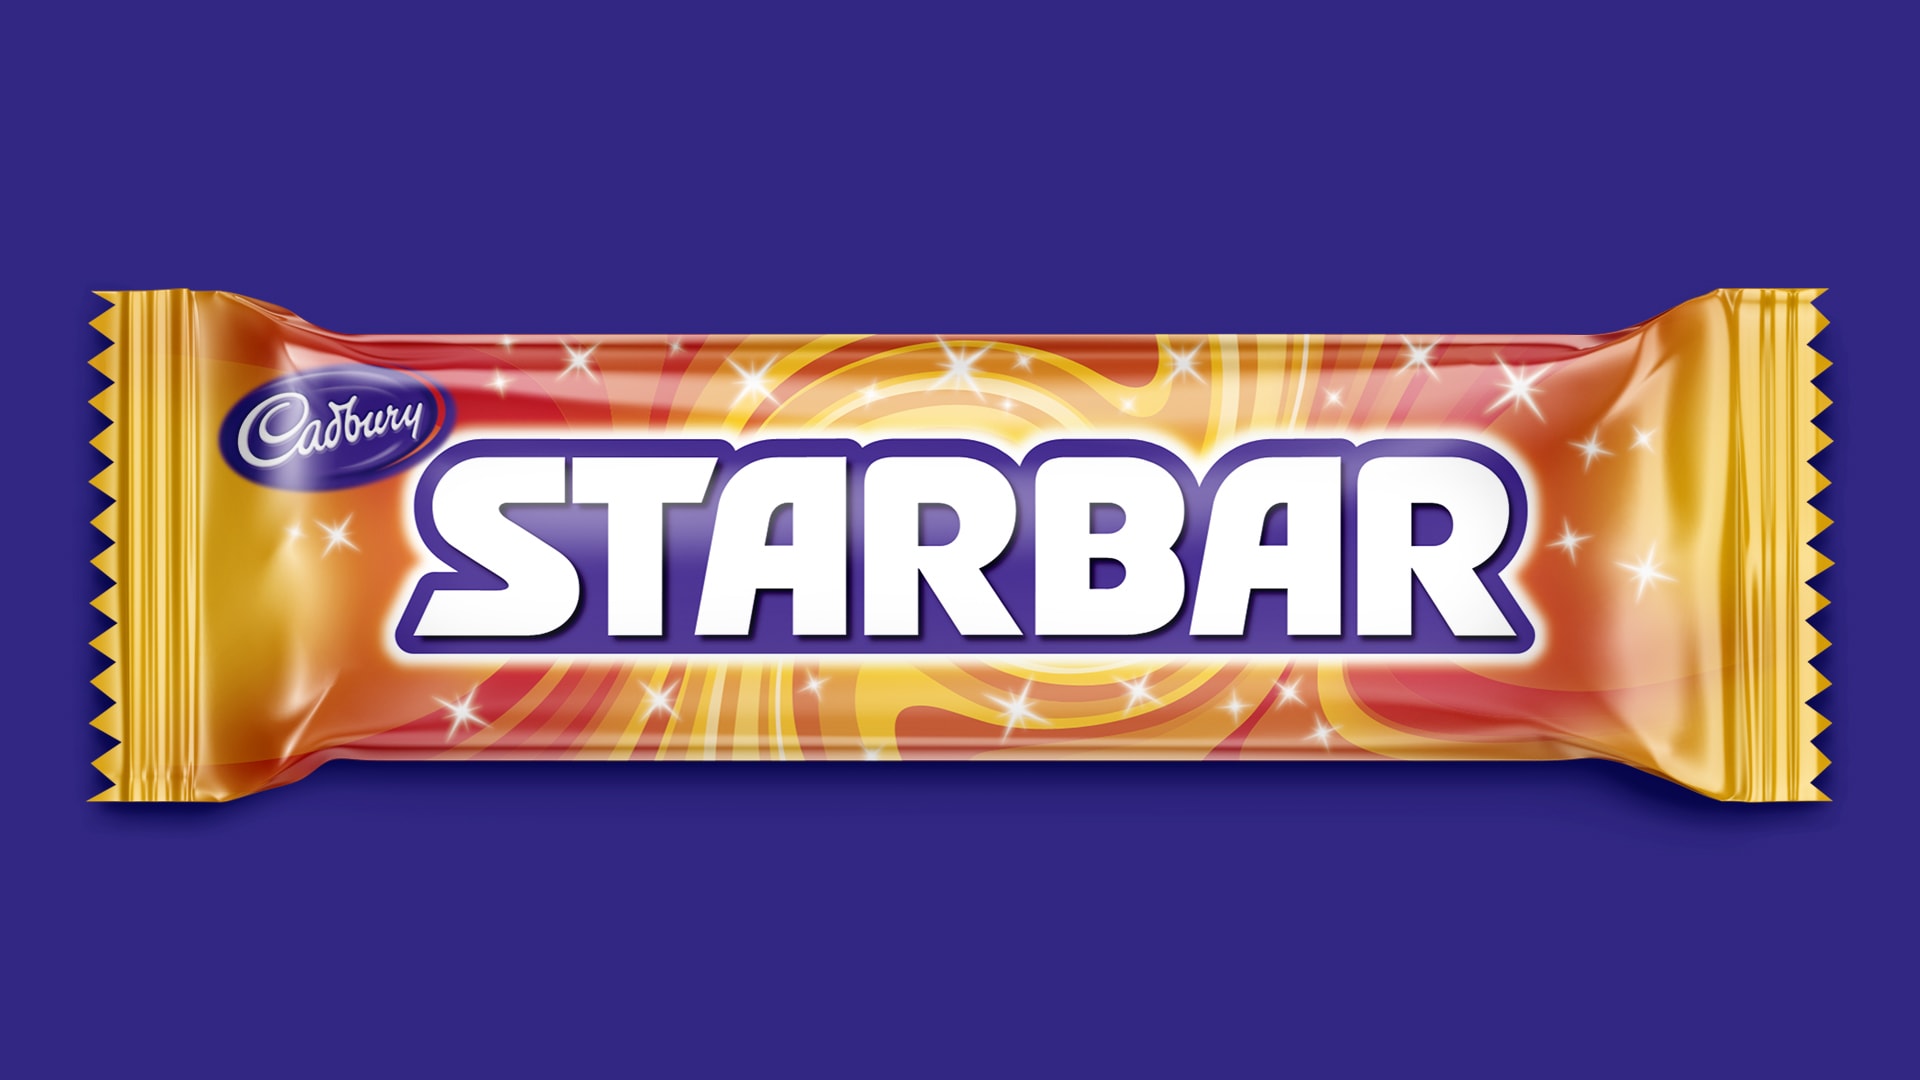 cadbury branding packaging design starbar chocolate bars